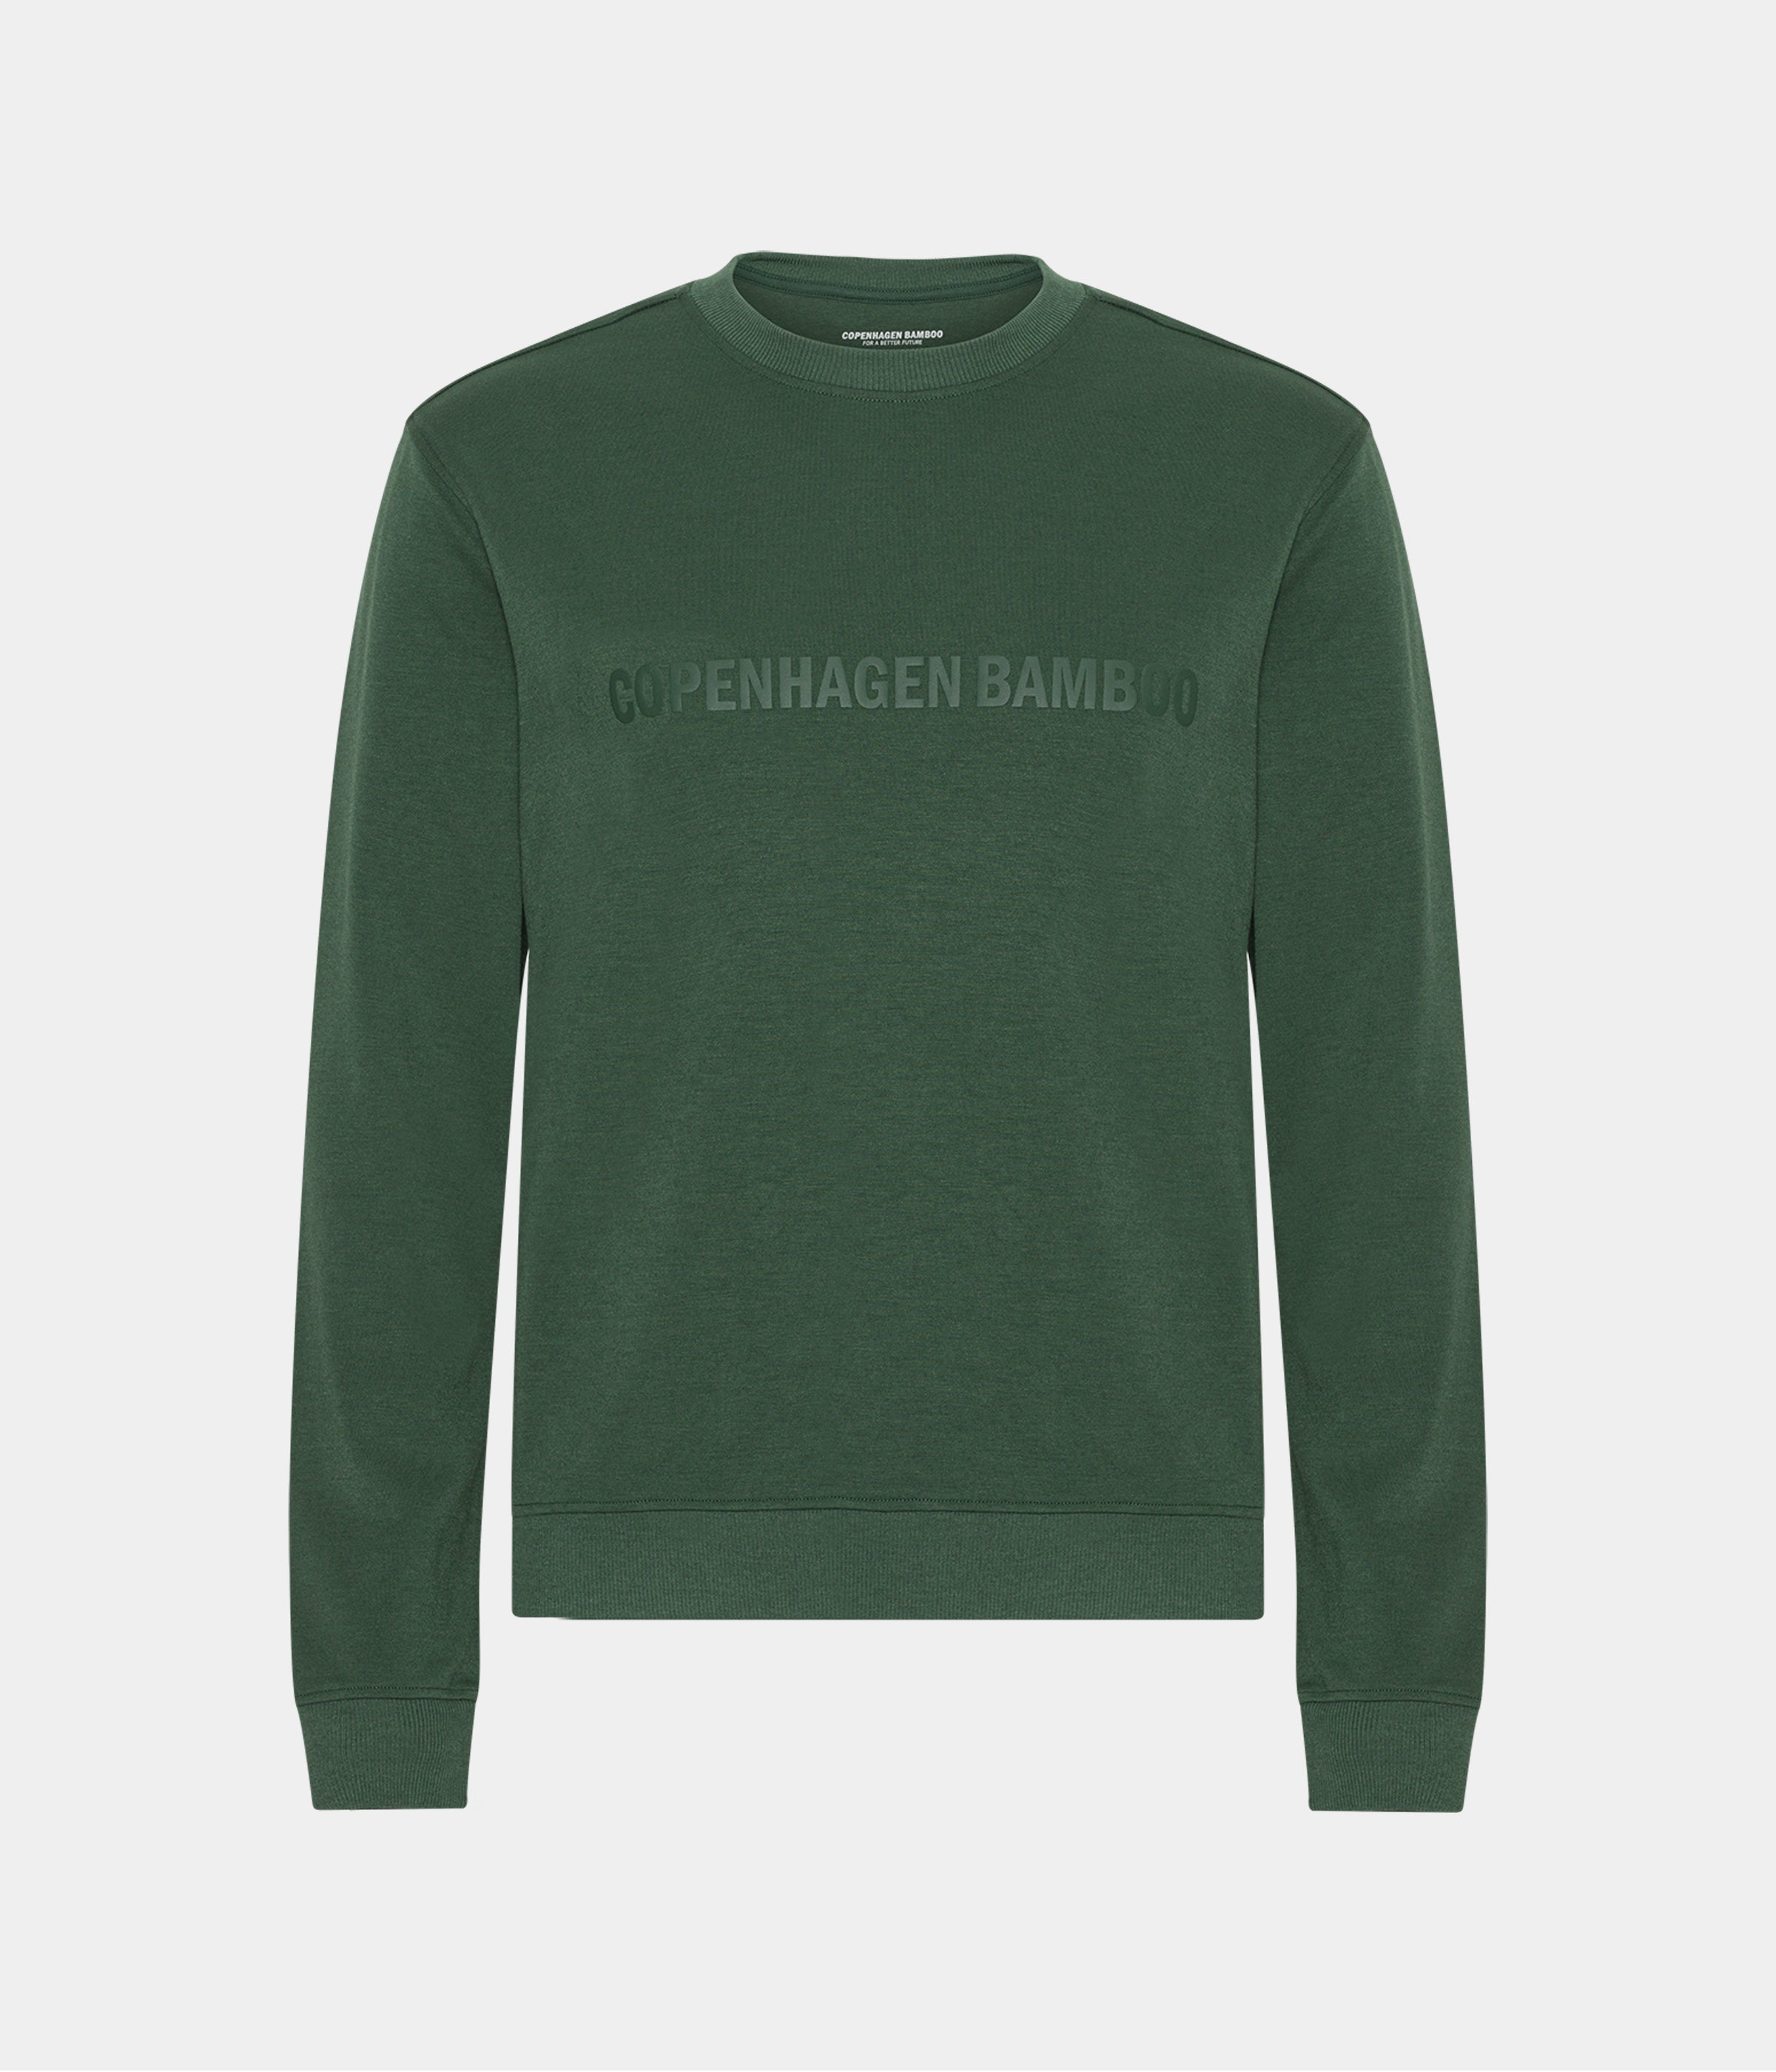 Grøn bambus sweatshirt til mænd med logo fra Copenhagen Bamboo, M